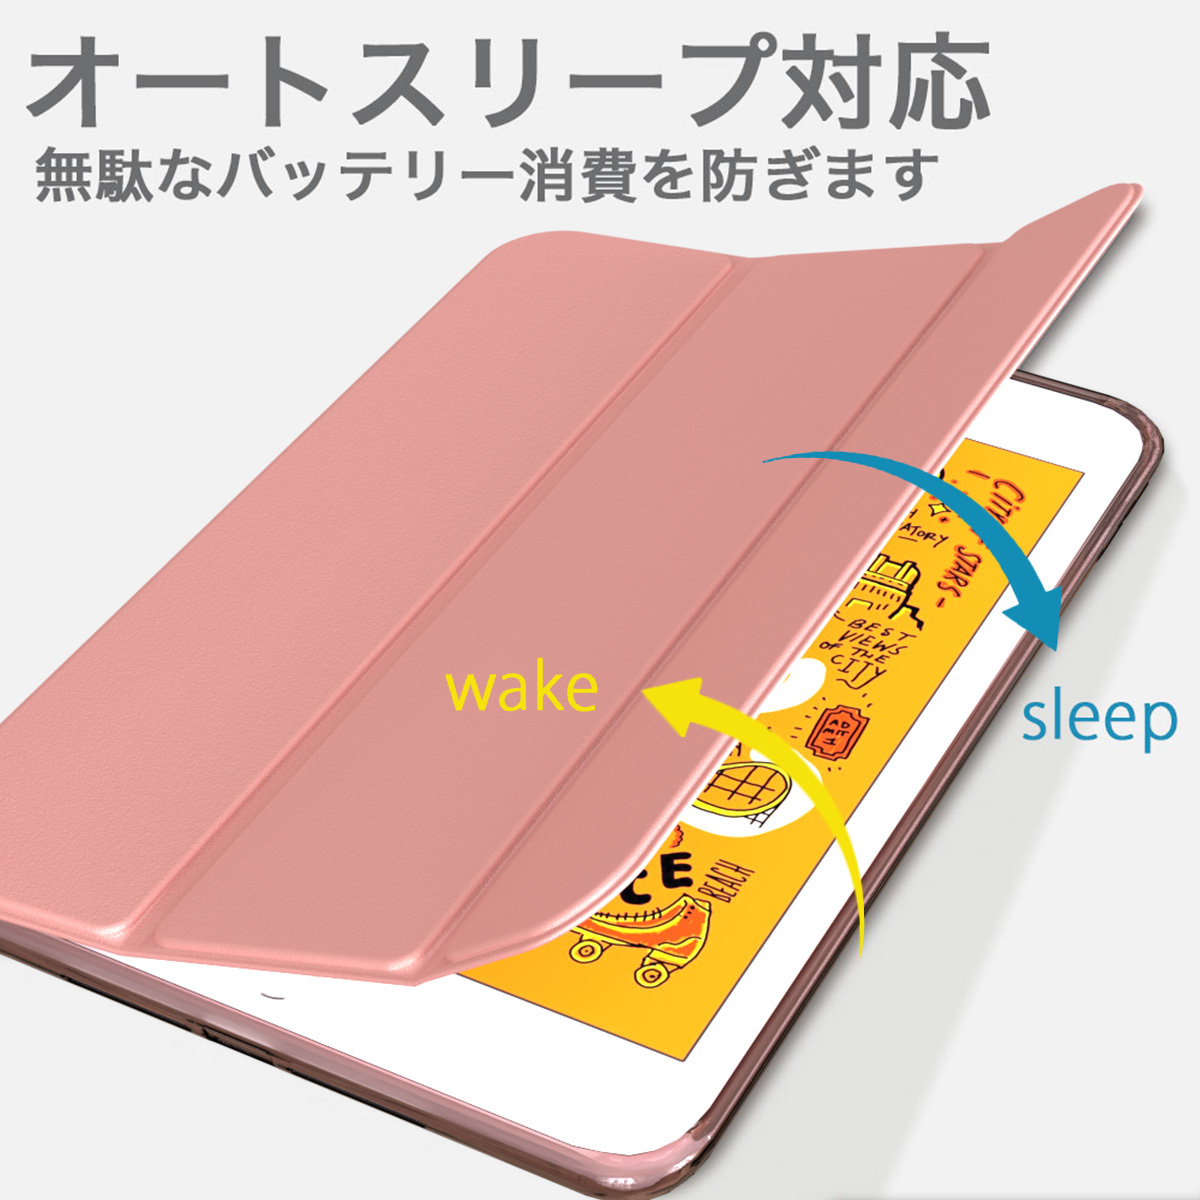 【訳あり】新品 MS factory iPad mini4 アイパッド ミニ 4 ソフトフレーム スマート TPU カバー スタンド ケース / ローズゴールド D5_オートスリープ対応